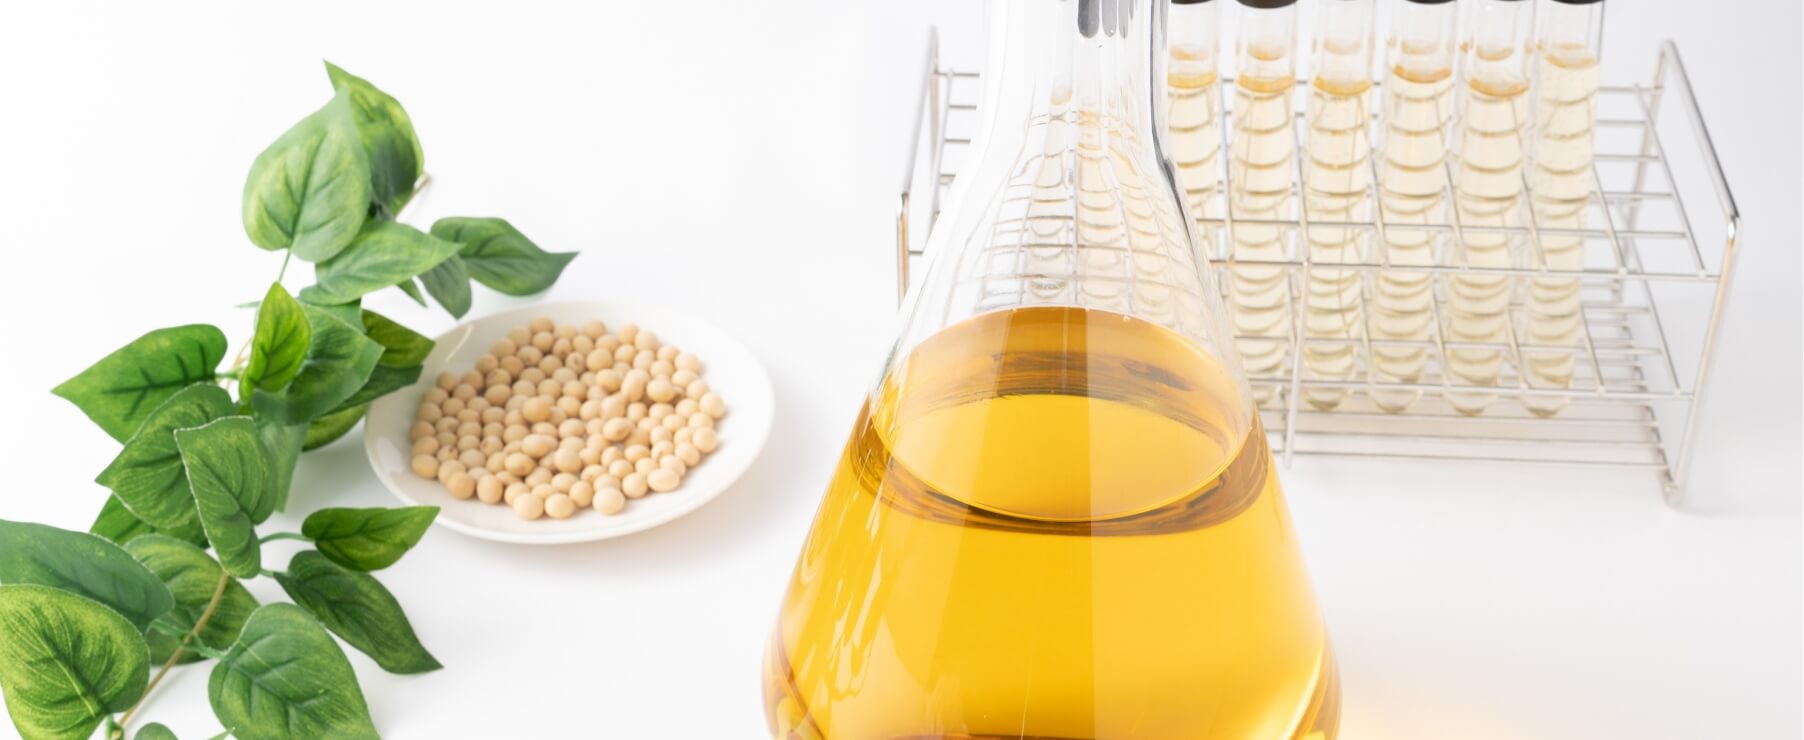 『21種の乳酸菌・ビフィズス菌』と『国産有機大豆』培地の発酵過程でうまれる発酵代謝産物を抽出したエキス